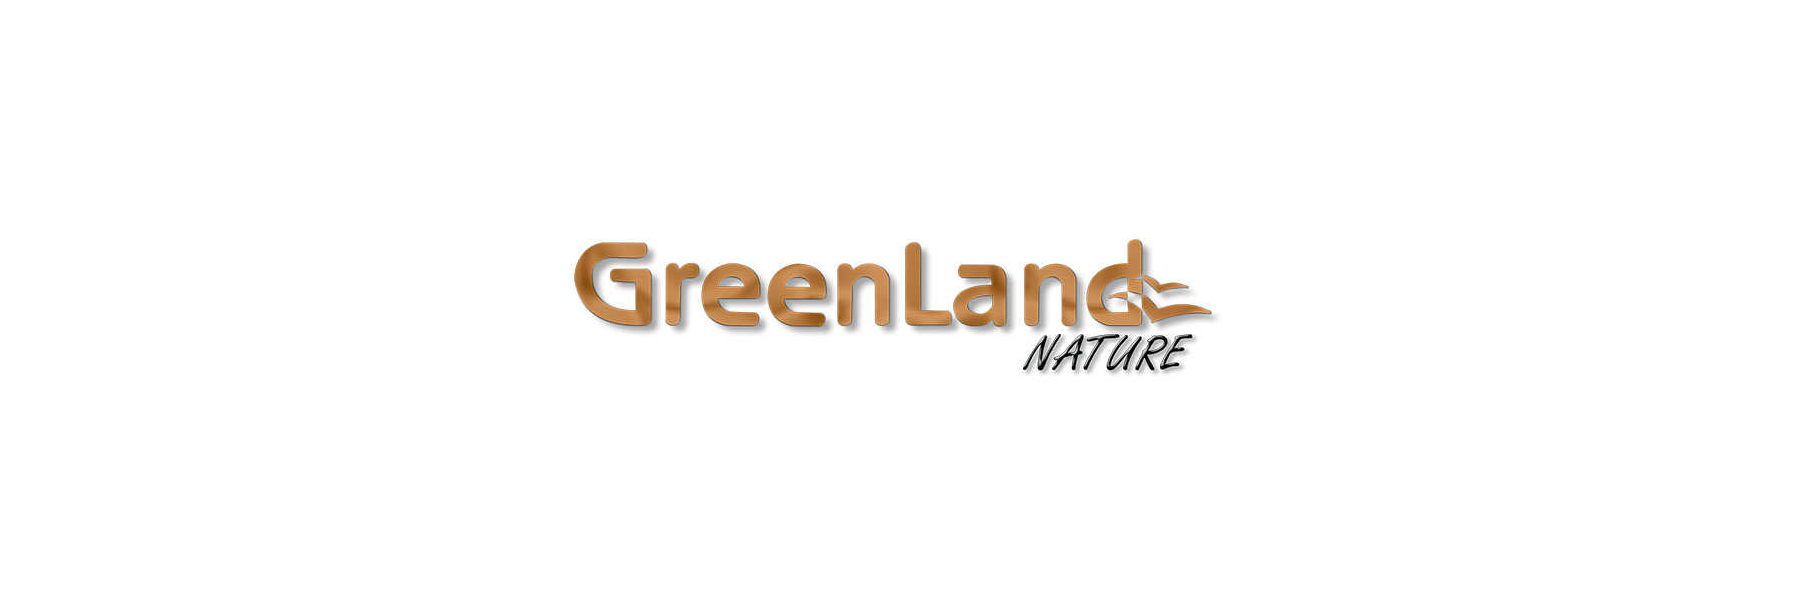 - Greenland Online Nature Lederwaren gegerbt Geldboerse natürlich Gel